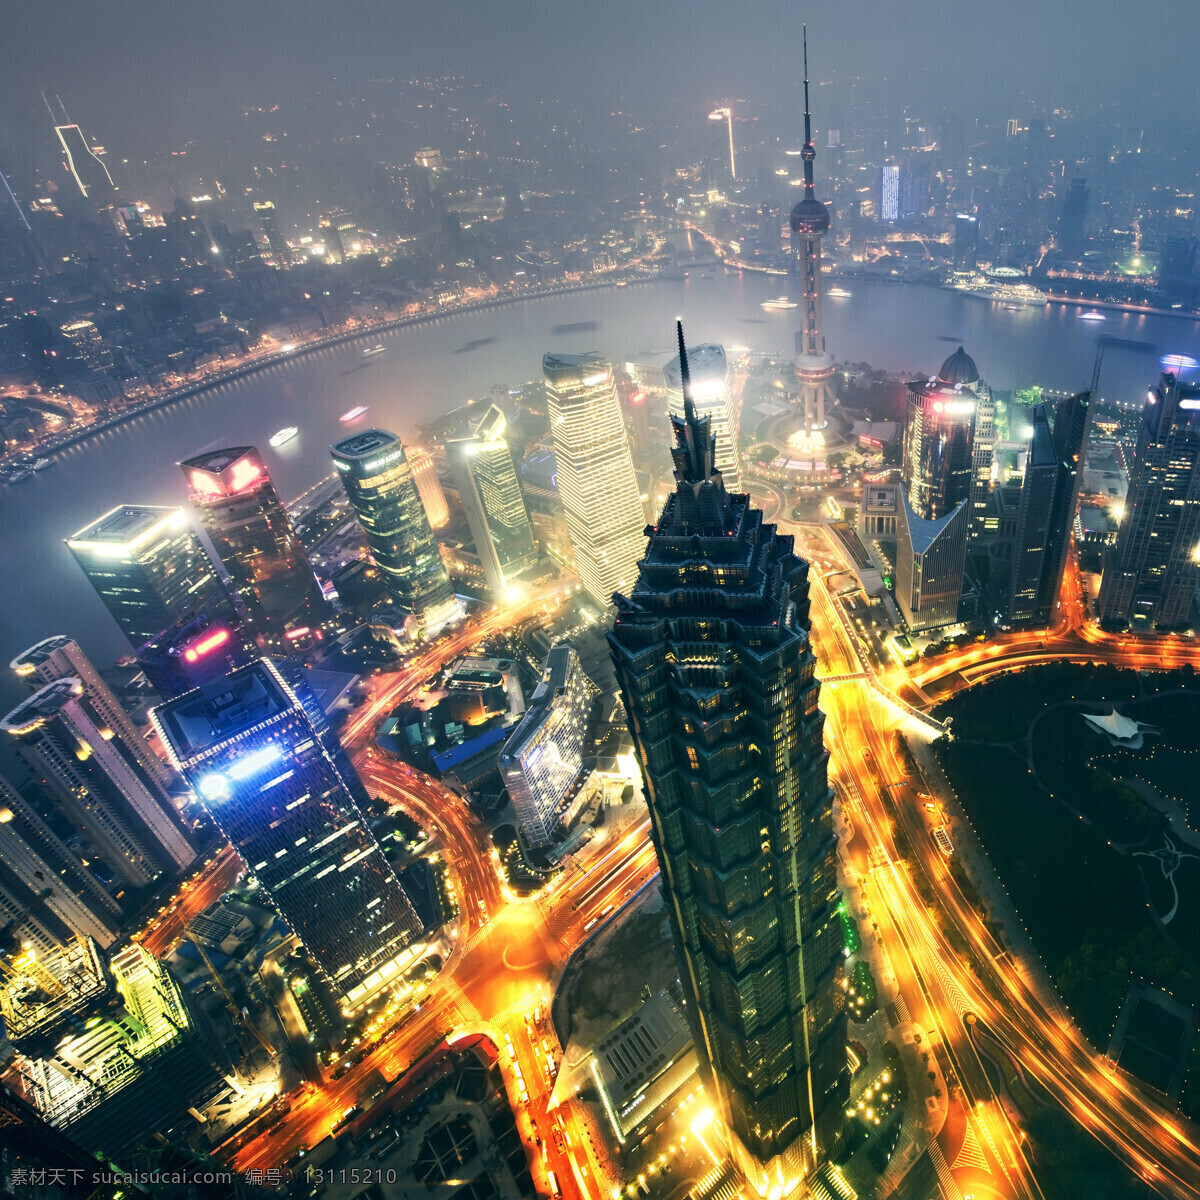 上海 夜景 上海夜景 城市夜景 现代都市 高楼大厦 美丽风景 城市风景 城市风光 环境家居